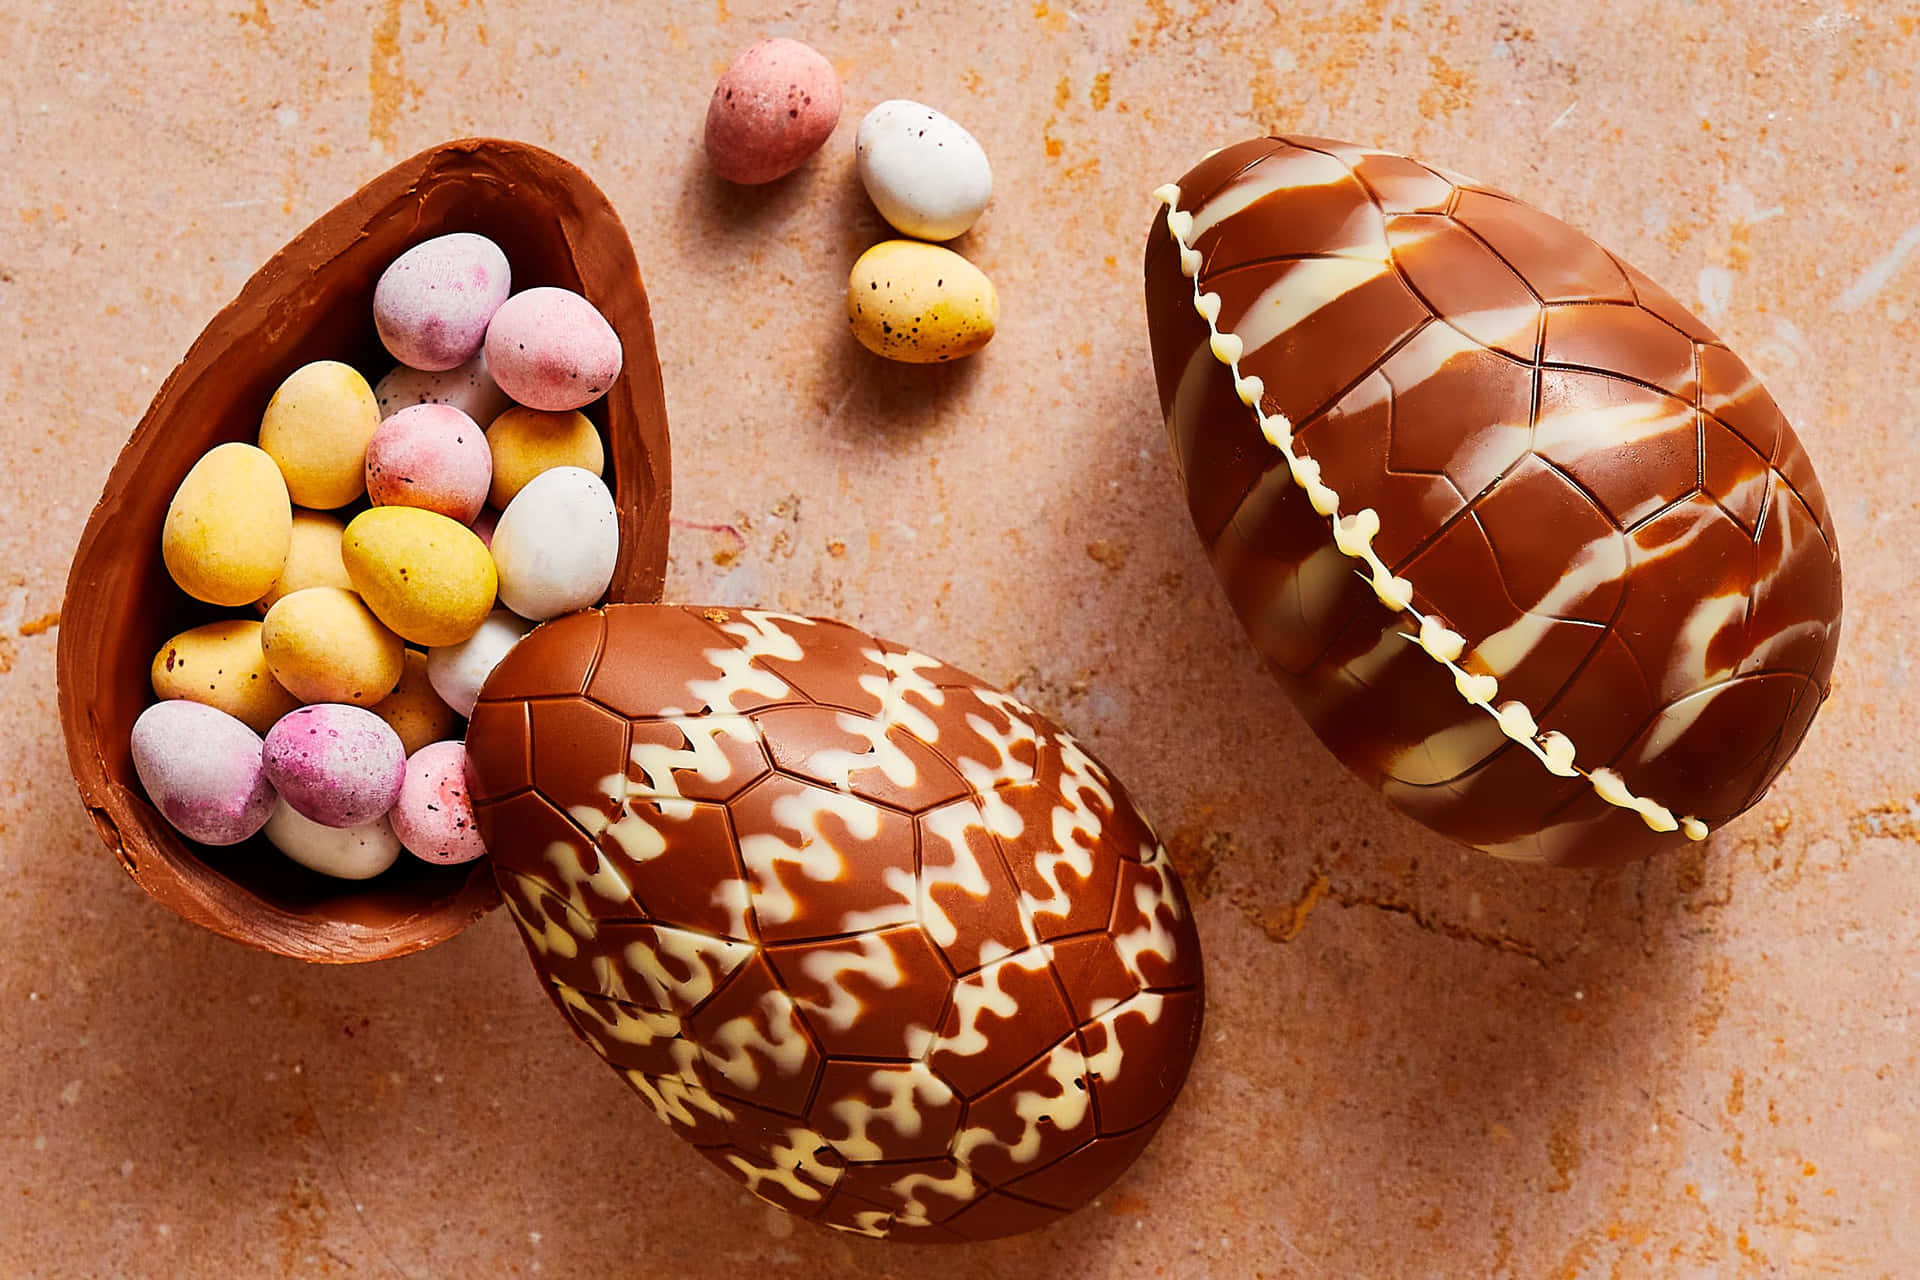 Imagende Un Huevo De Pascua De Chocolate Vacío.